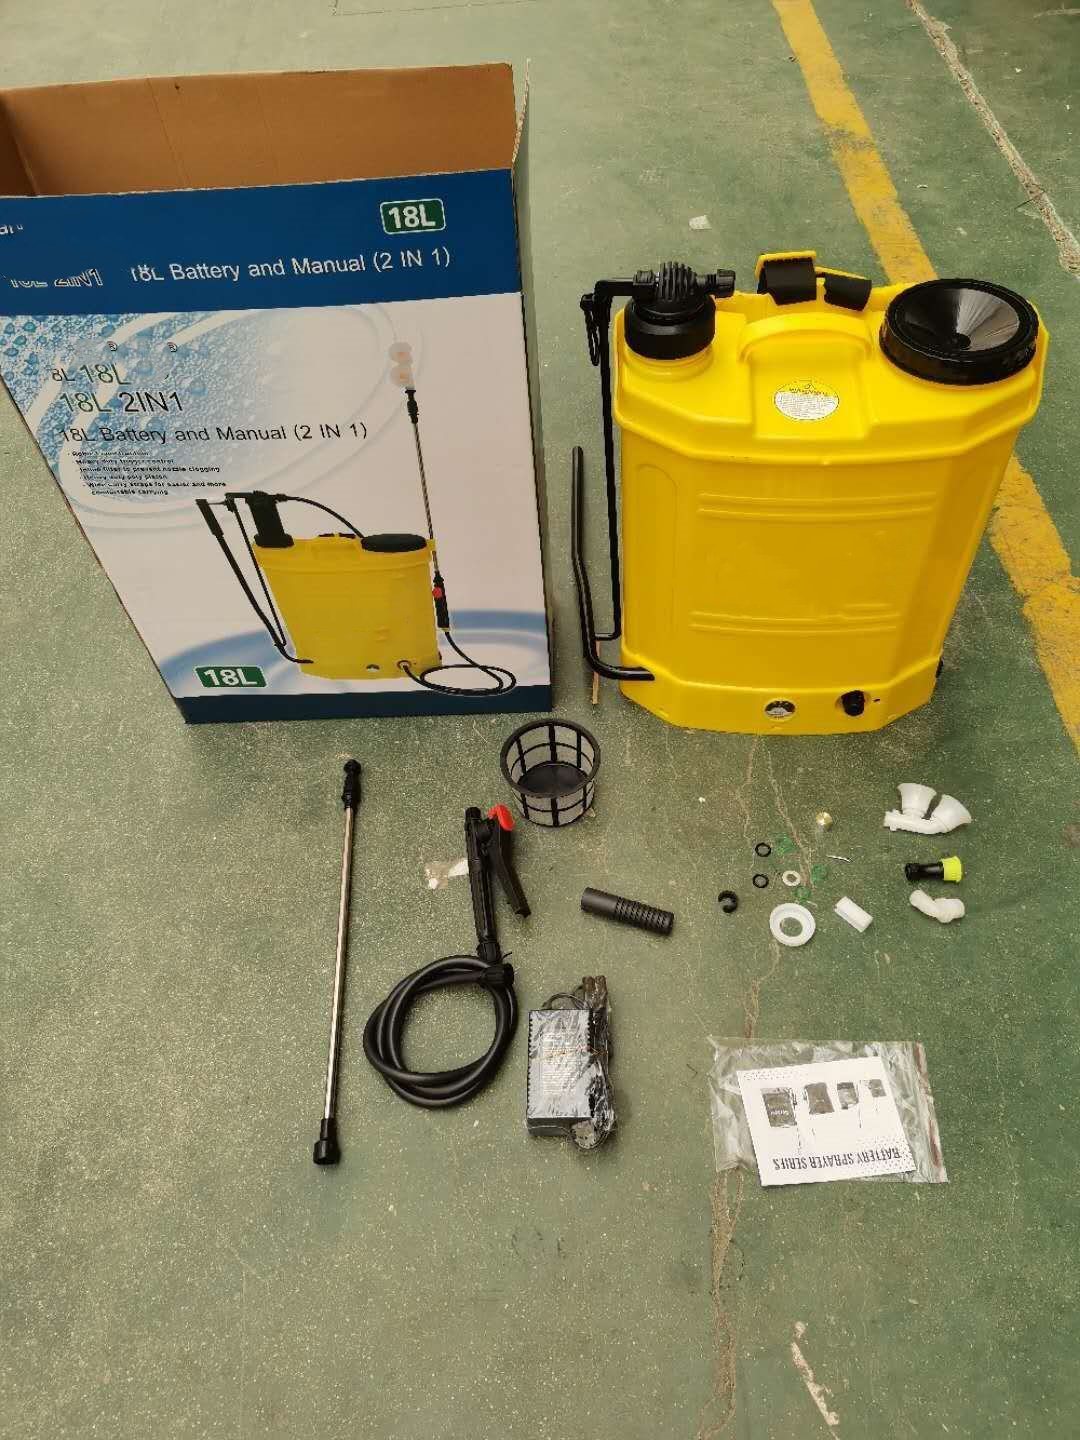 Nuevo pulverizador de mochila manual eléctrico dos en uno 18L para agricultura/jardín/hogar GF-18SD-01Z